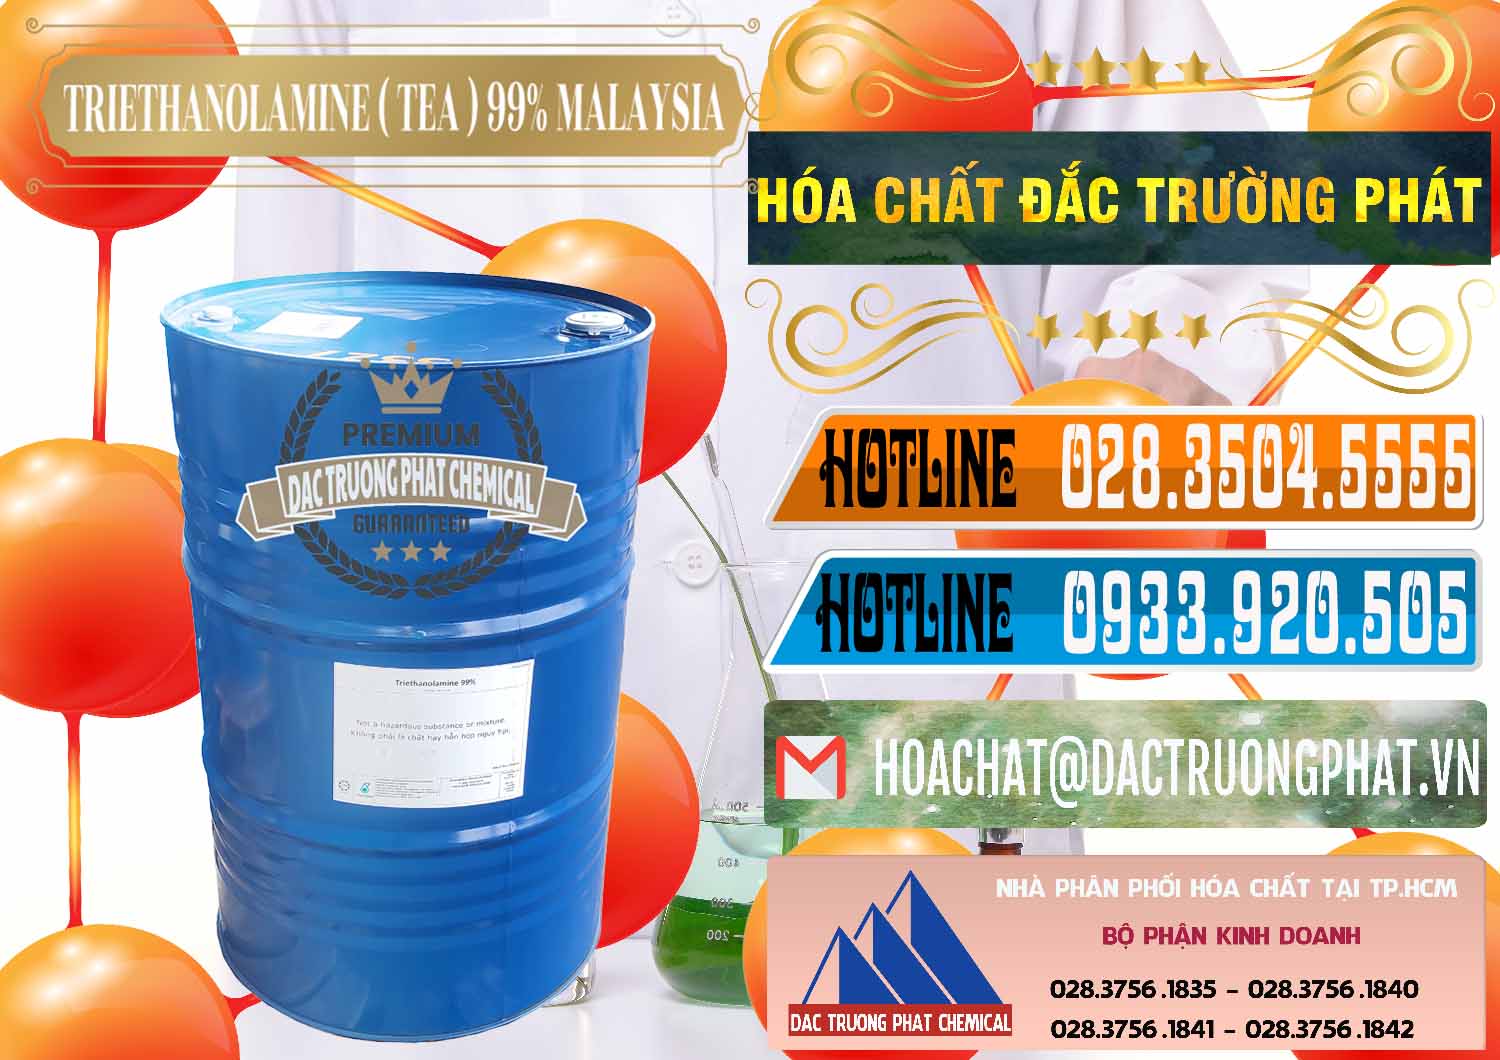 Cty chuyên nhập khẩu và bán TEA - Triethanolamine 99% Mã Lai Malaysia - 0323 - Cty bán ( cung cấp ) hóa chất tại TP.HCM - stmp.net